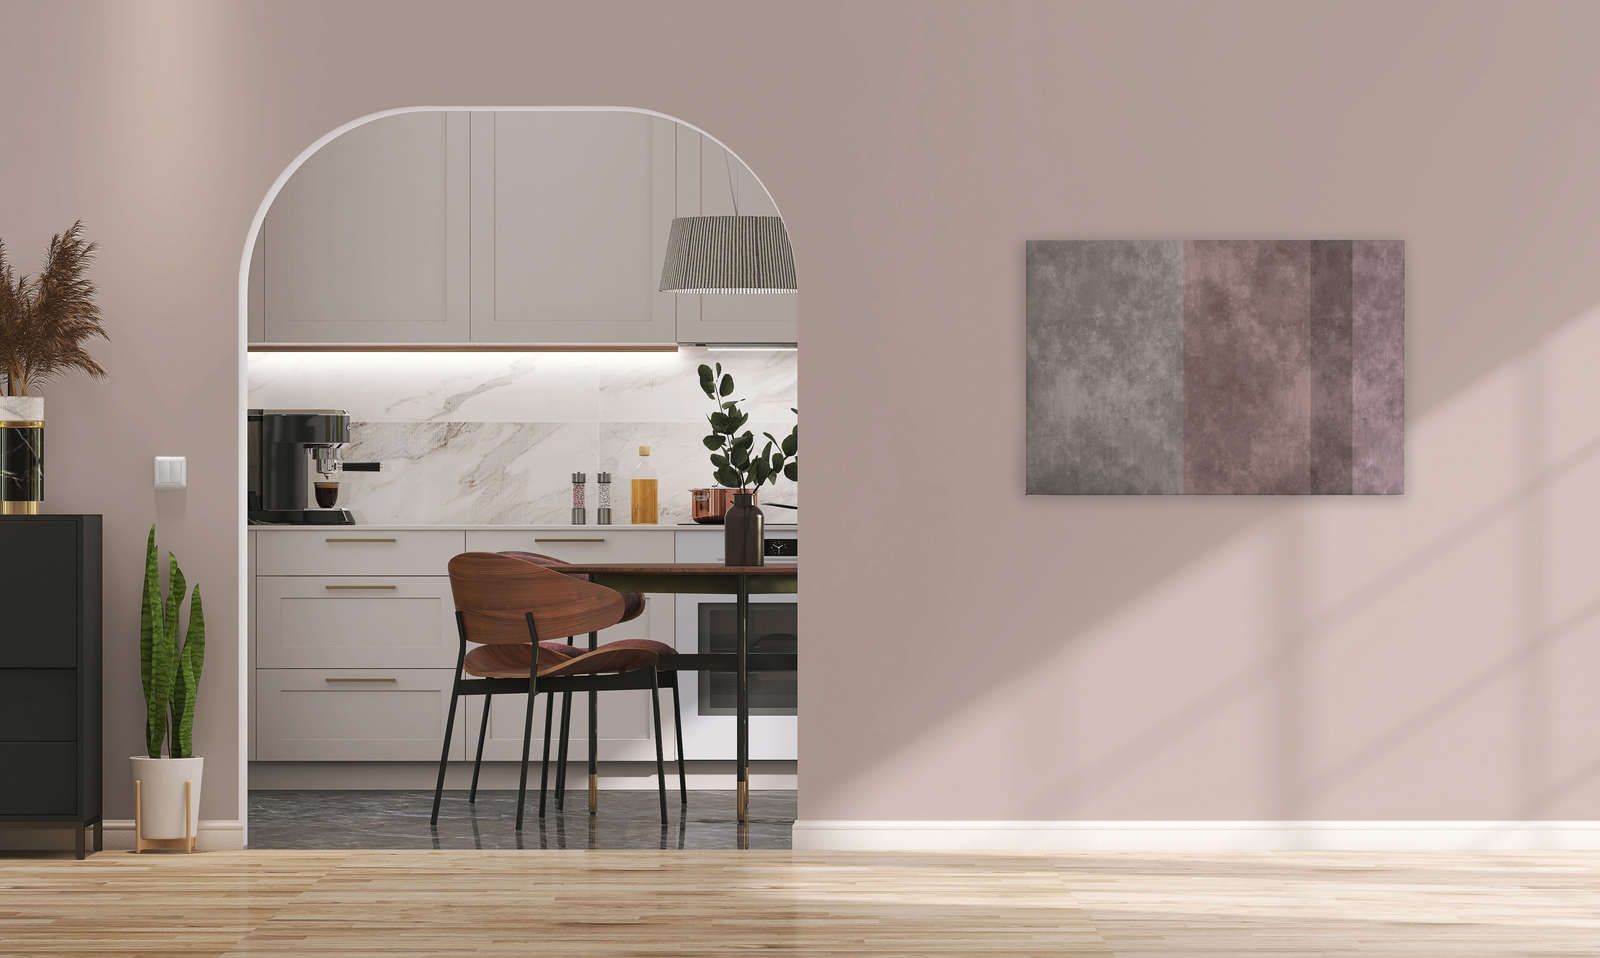             Quadro in tela effetto cemento con strisce | grigio, rosa - 0,90 m x 0,60 m
        